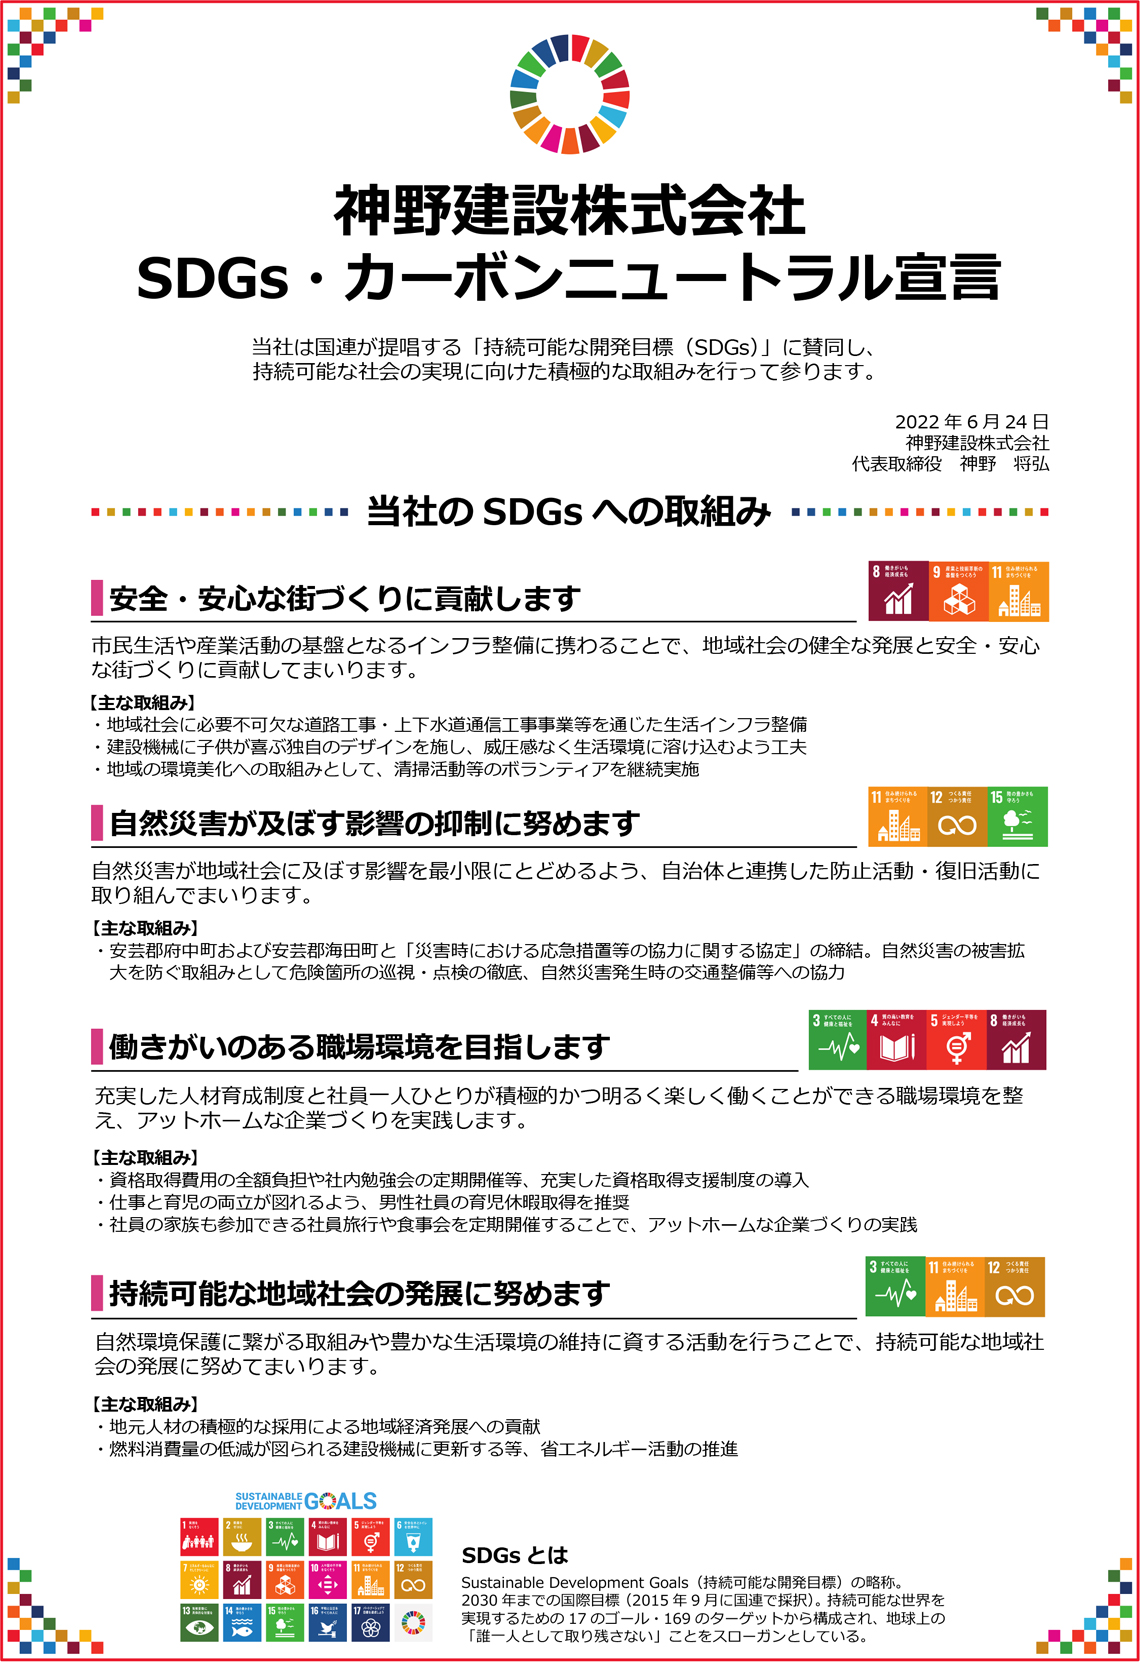 神野建設株式会社 SDGs・カーボンニュートラル宣言